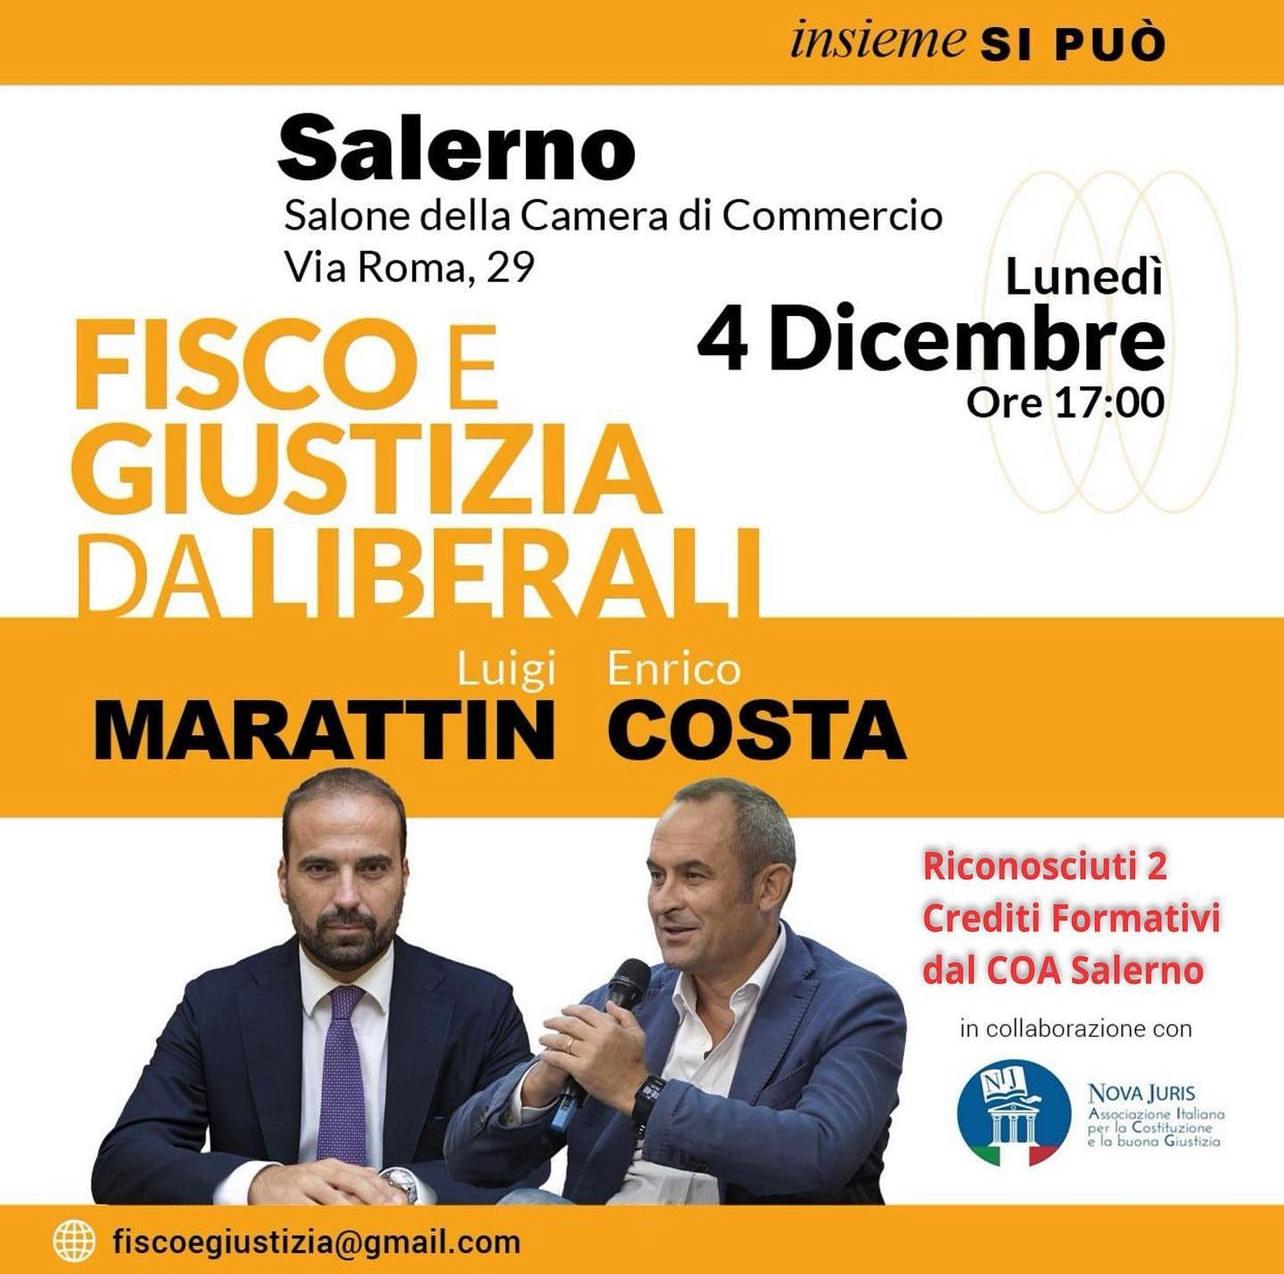 Salerno: a Camera di Commercio “Fisco e Giustizia da Liberali”, incontro con on. Marattin e on. Costa